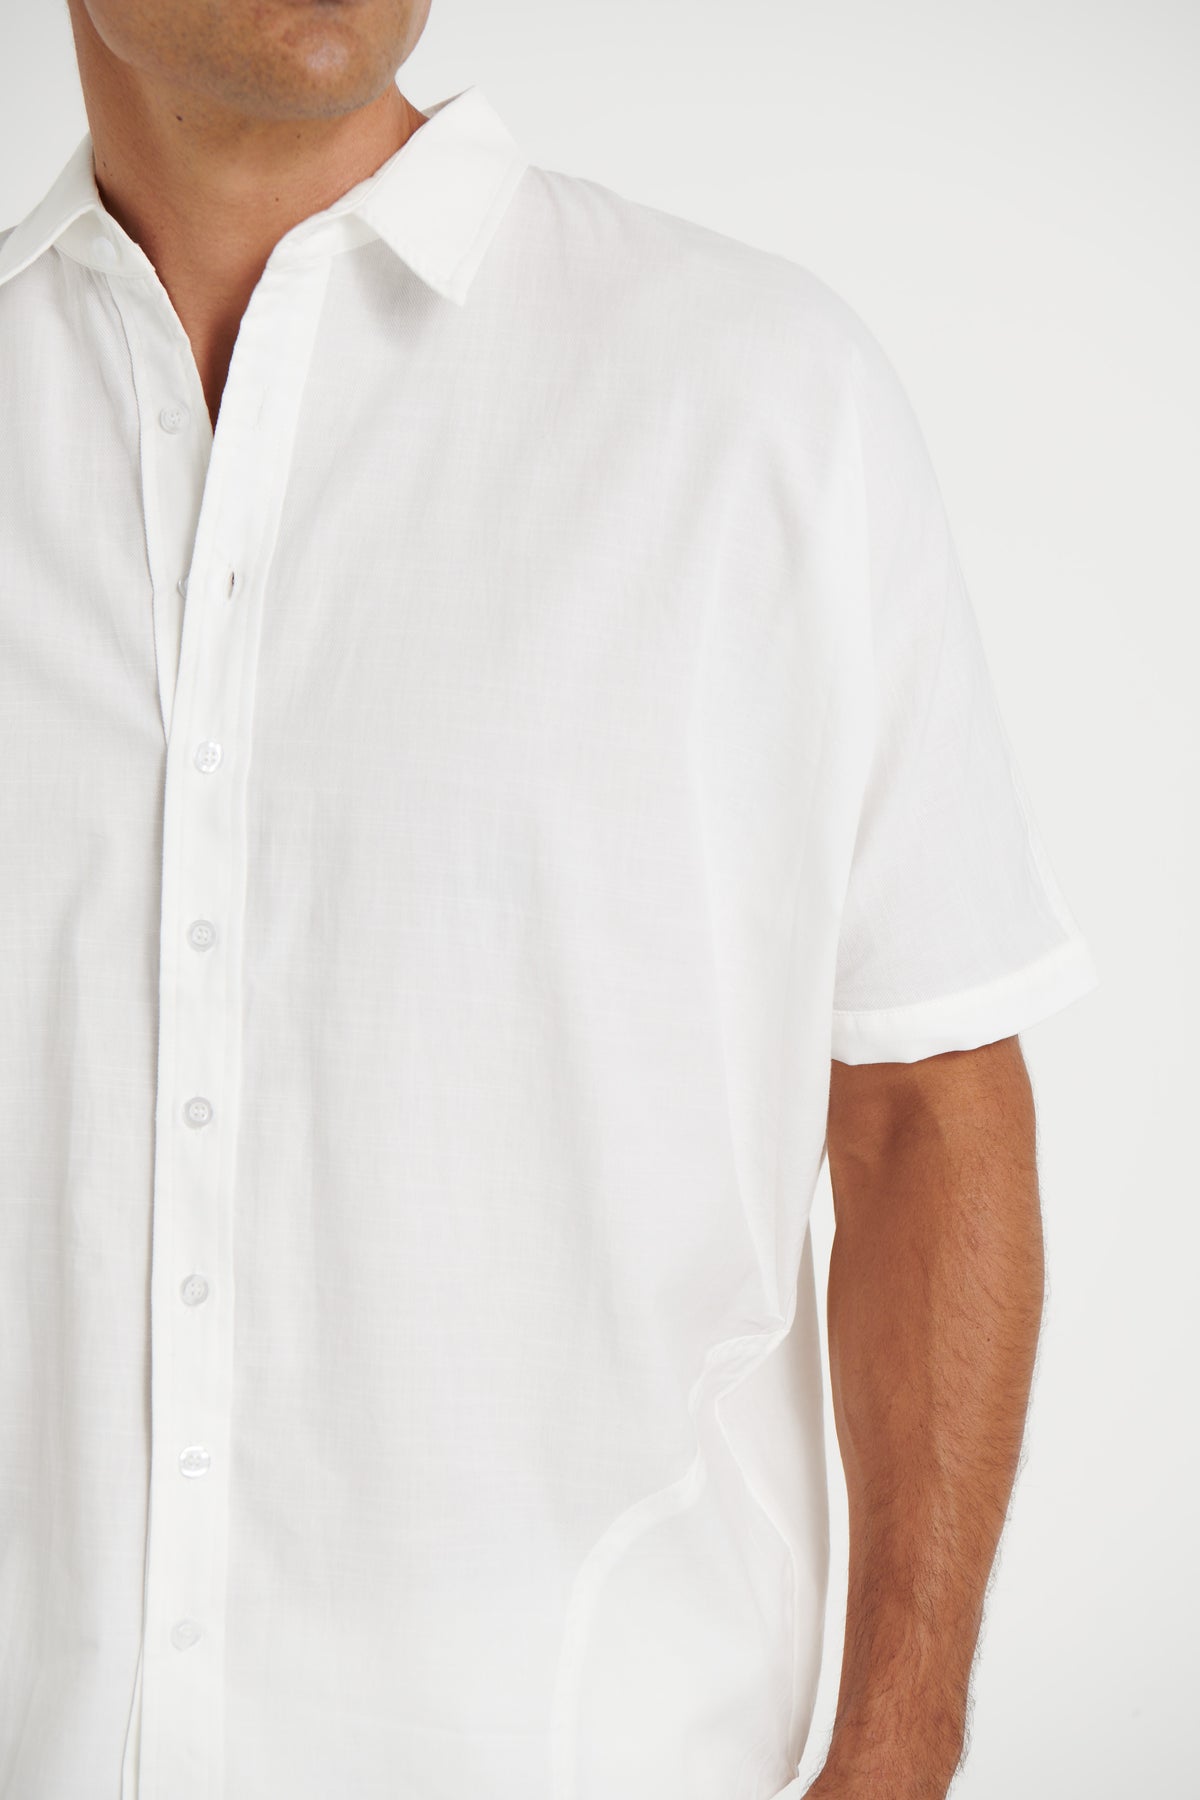 Satori Shirt White - FINAL SALE